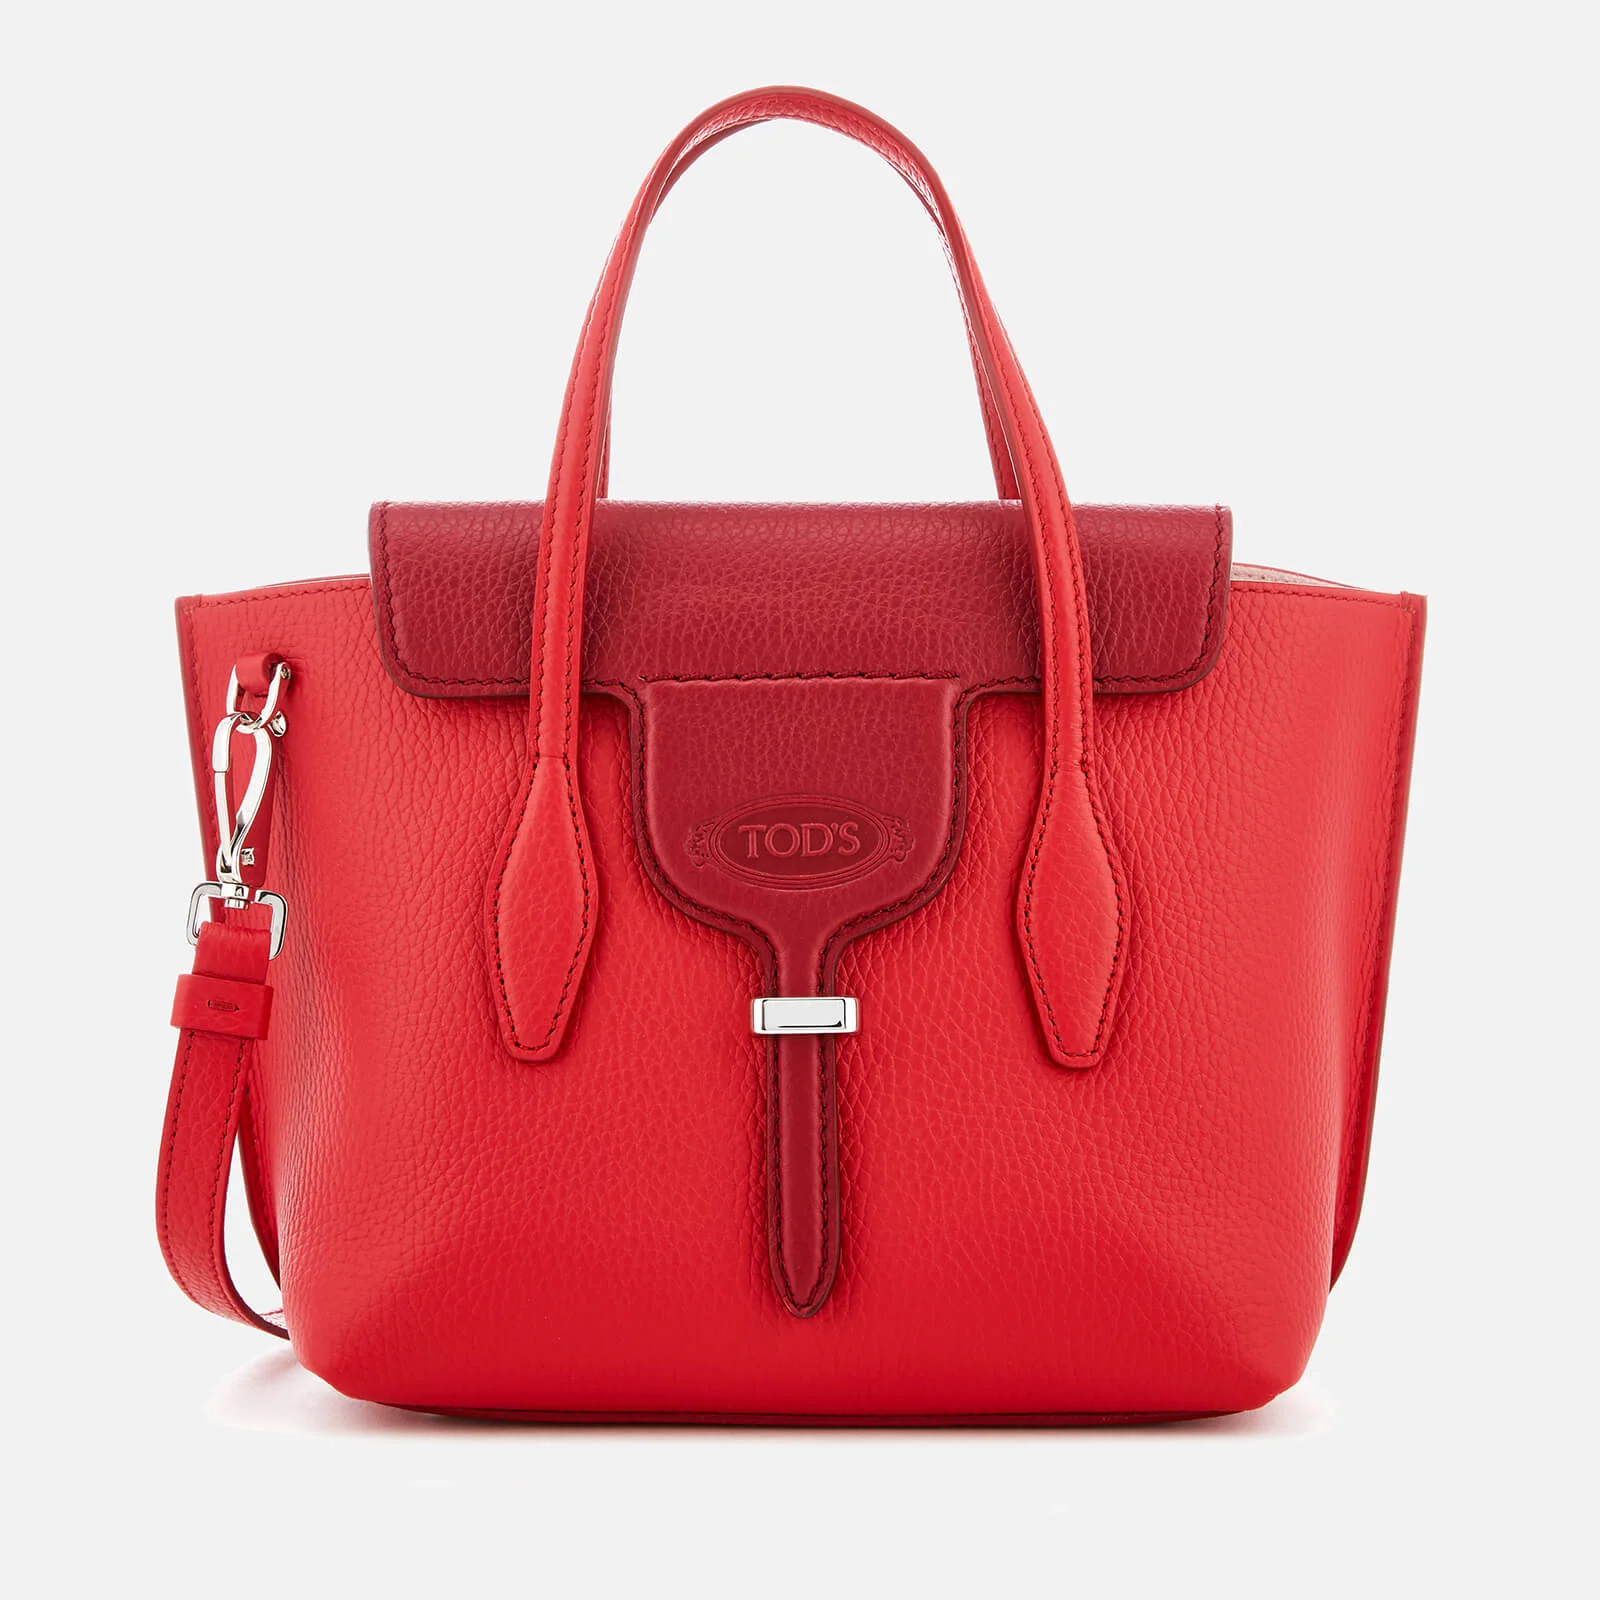 Tod's Women's Joy Tote Bag - Red Image 1